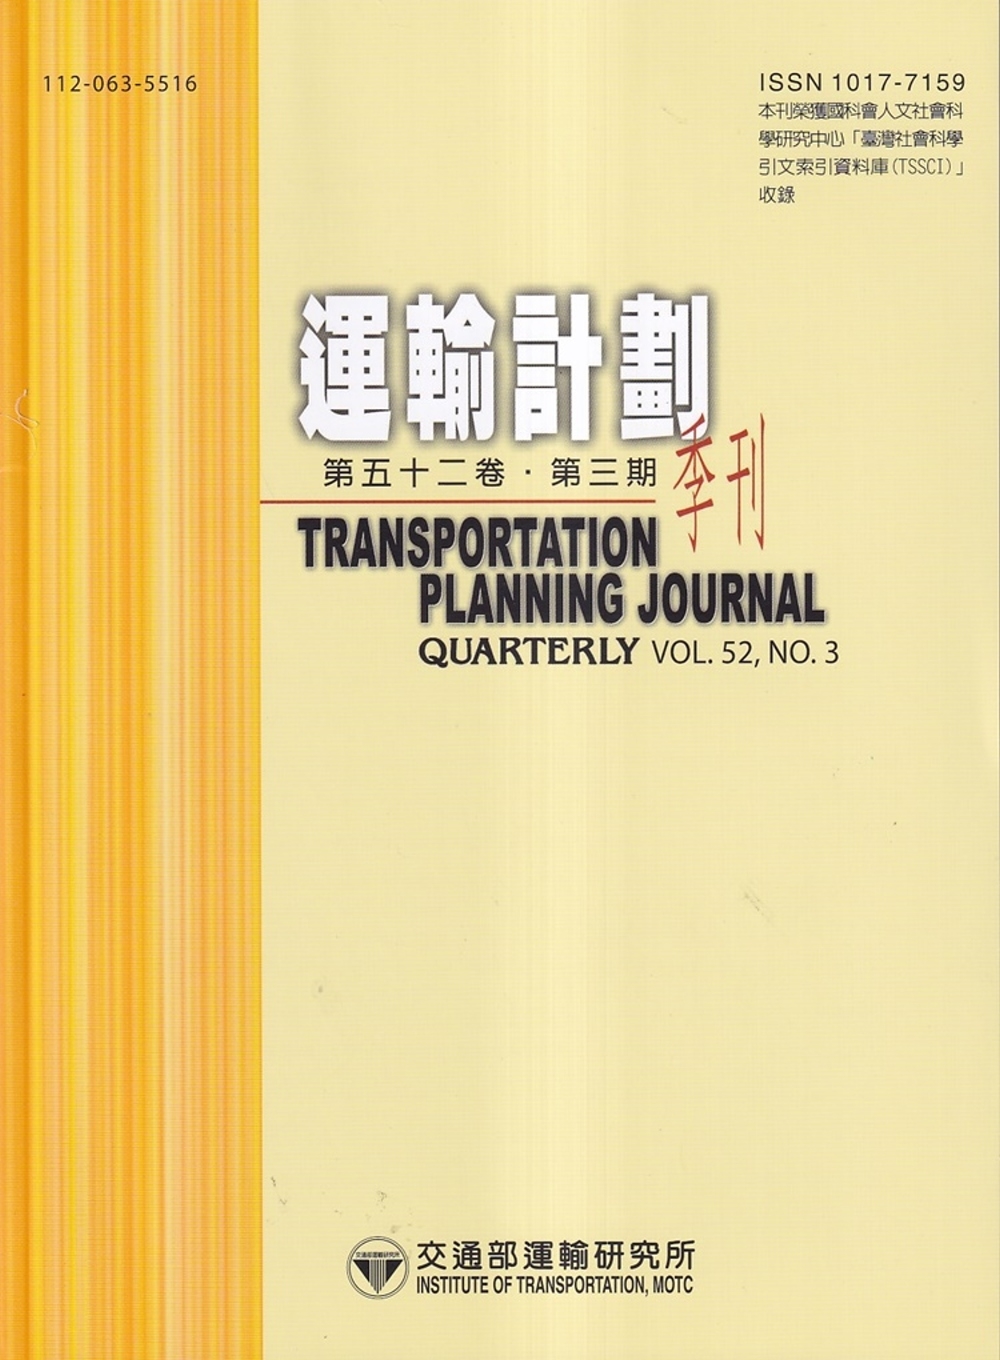 運輸計劃季刊52卷3期(112/09)：多元交通行動服務使用者之套票購買行為分析-以高雄市MaaS系統為例